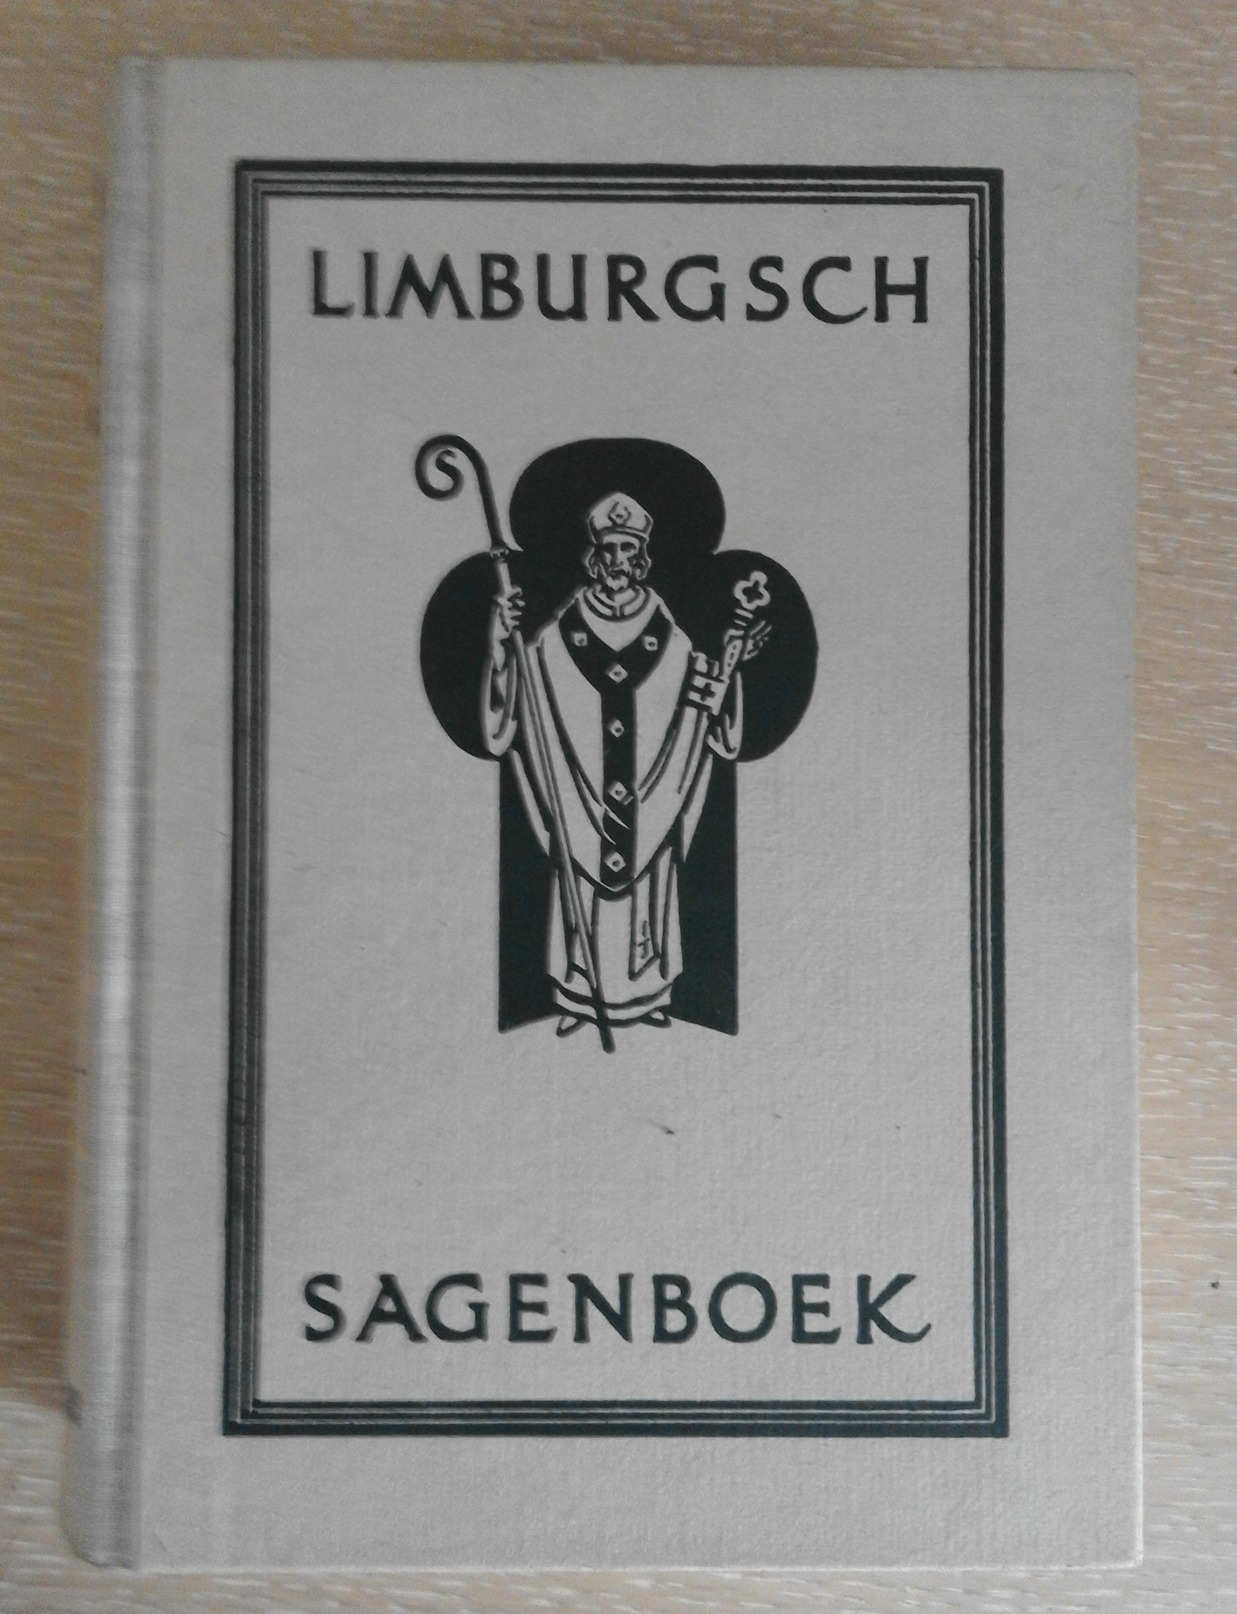 Limburgsch Sagenboek - Jacques R.W. Sinninghe  1978 - History